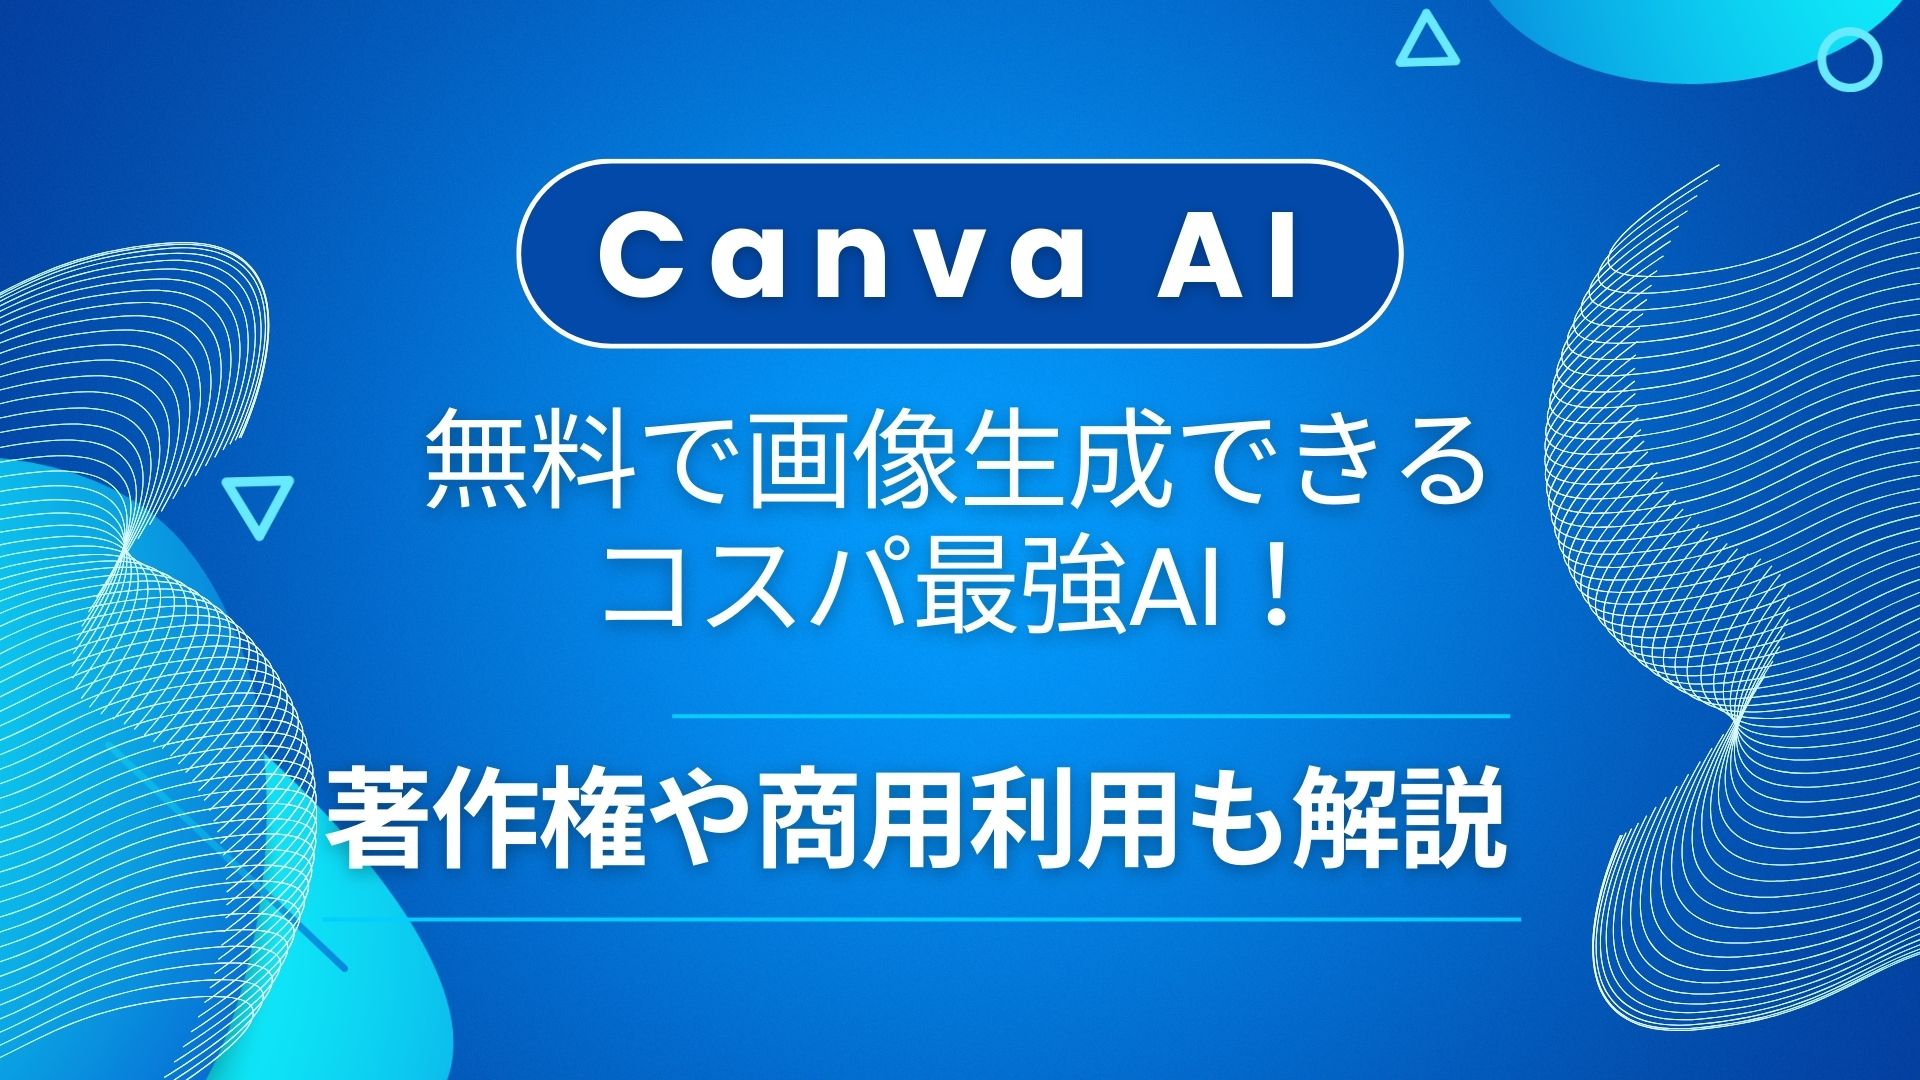 Canva-AI 無料 画像生成 AI